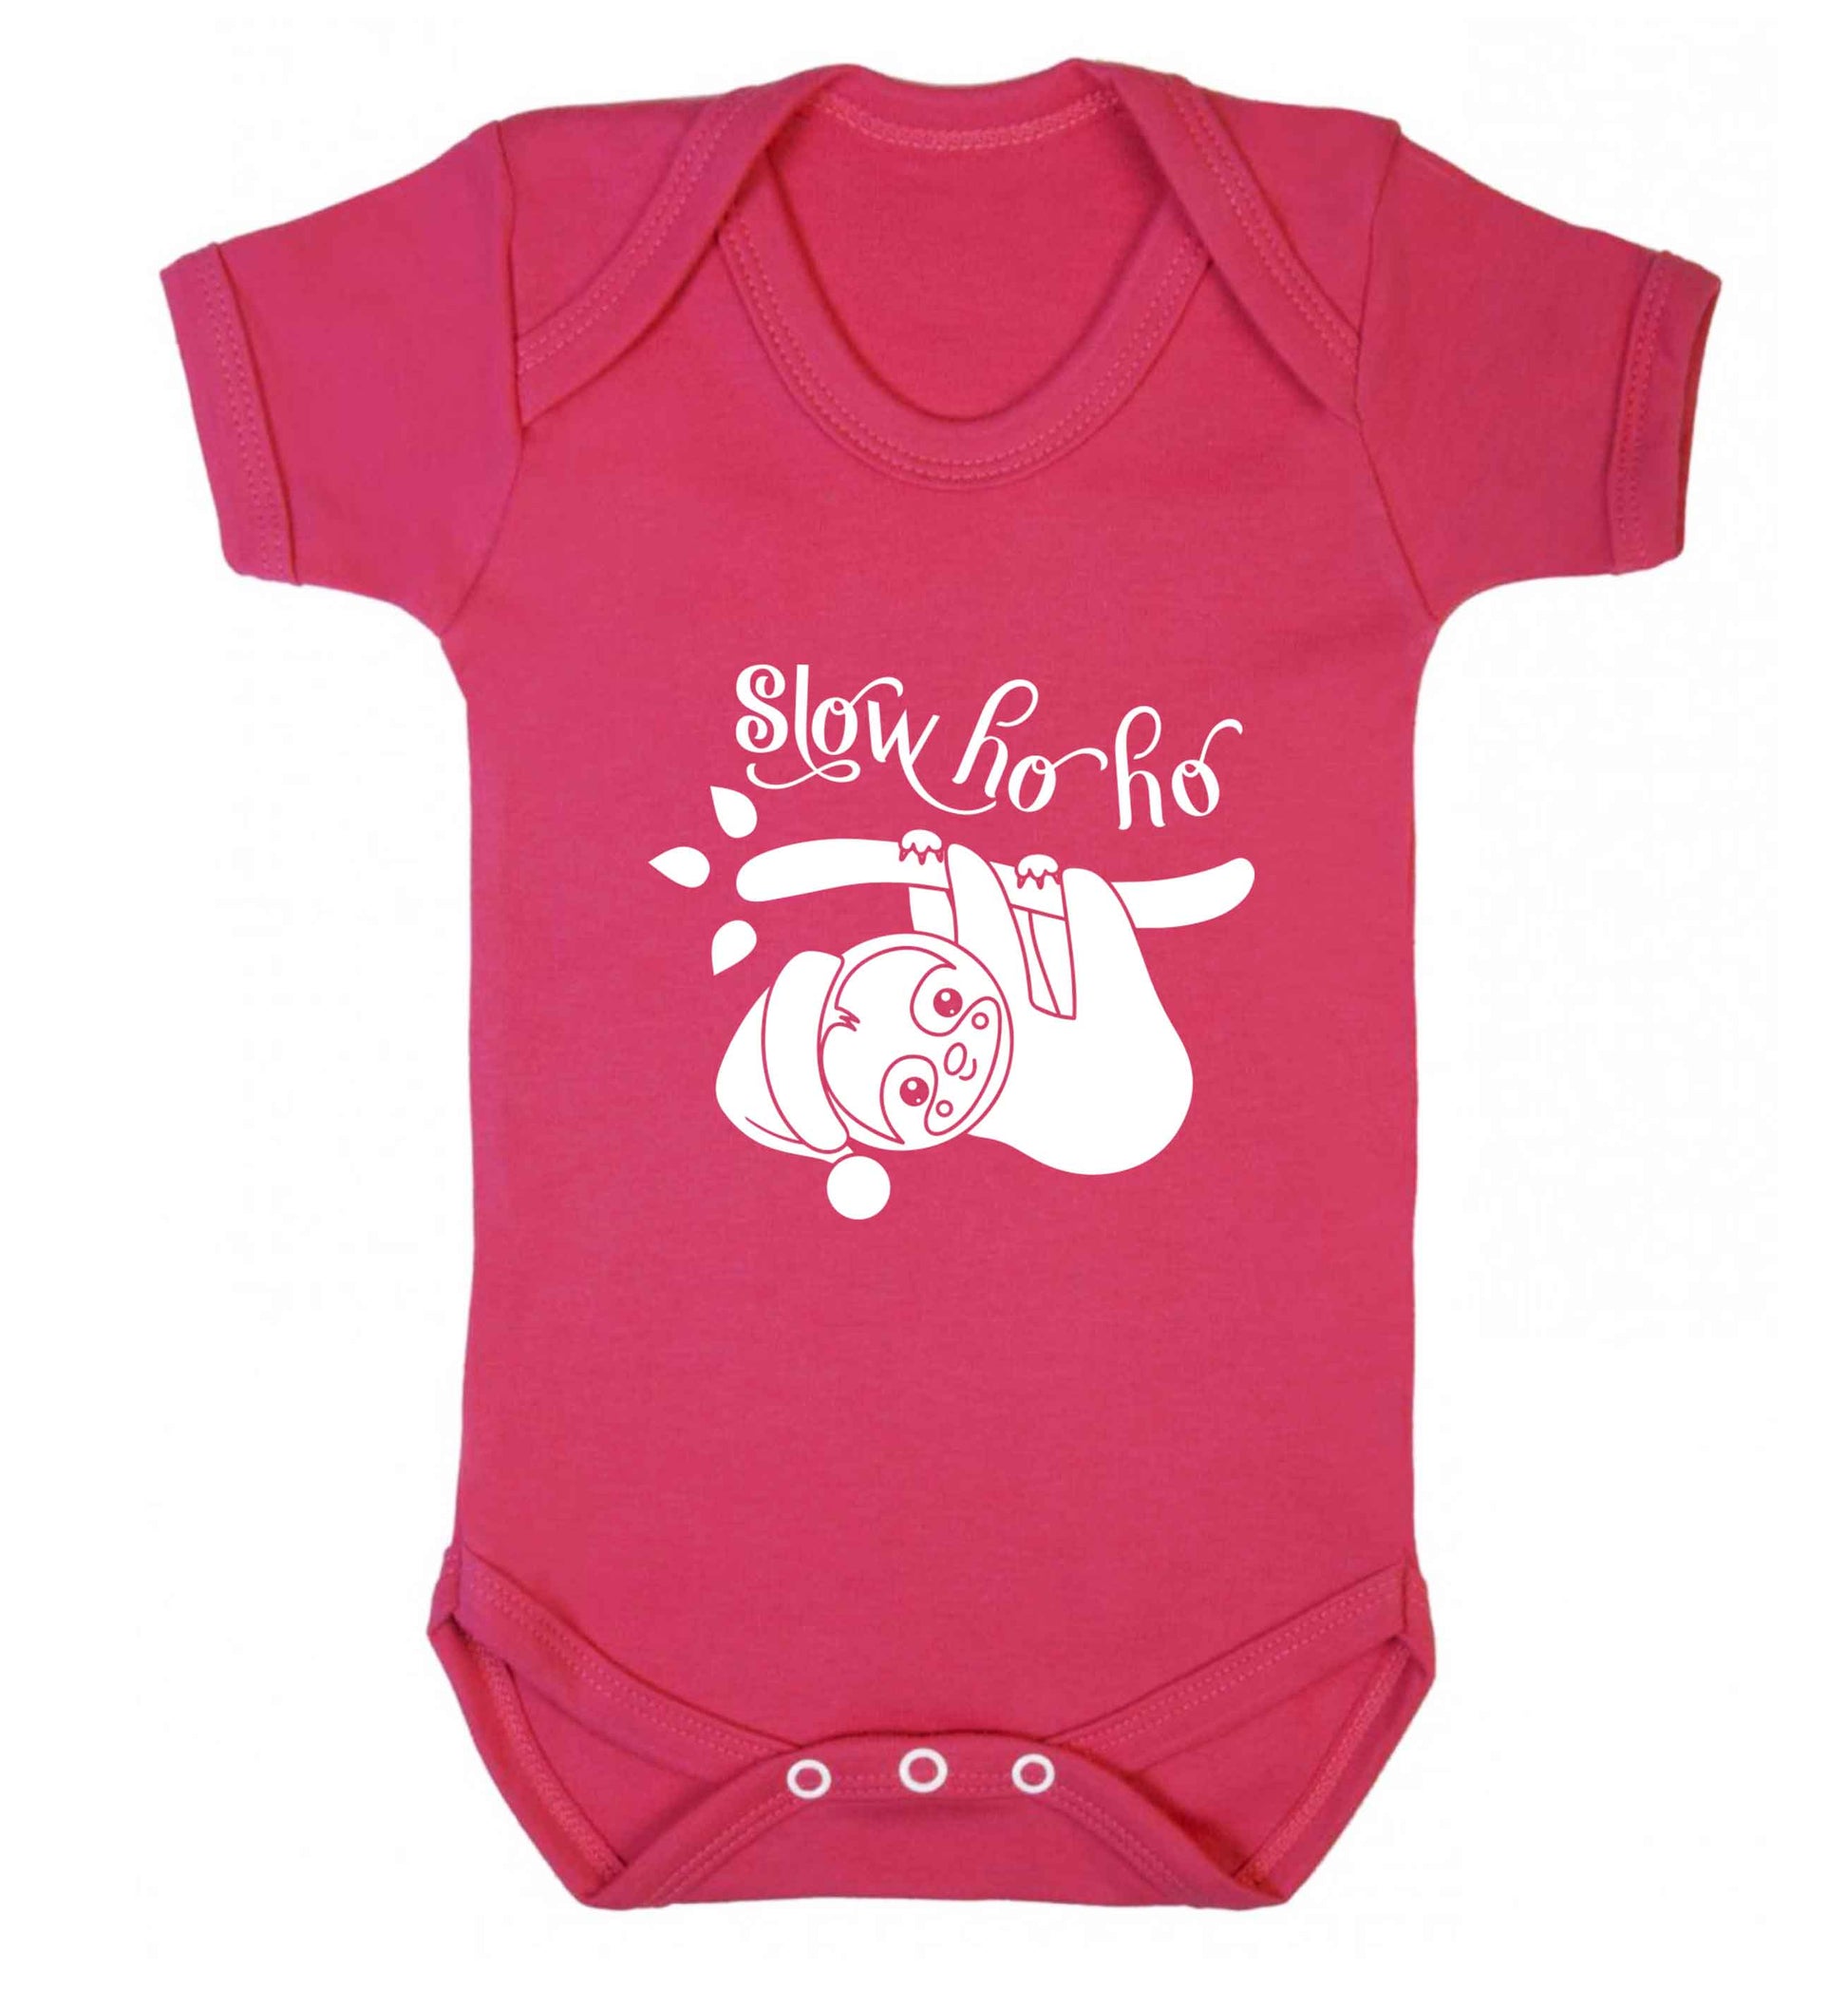 Slow Ho Ho baby vest dark pink 18-24 months